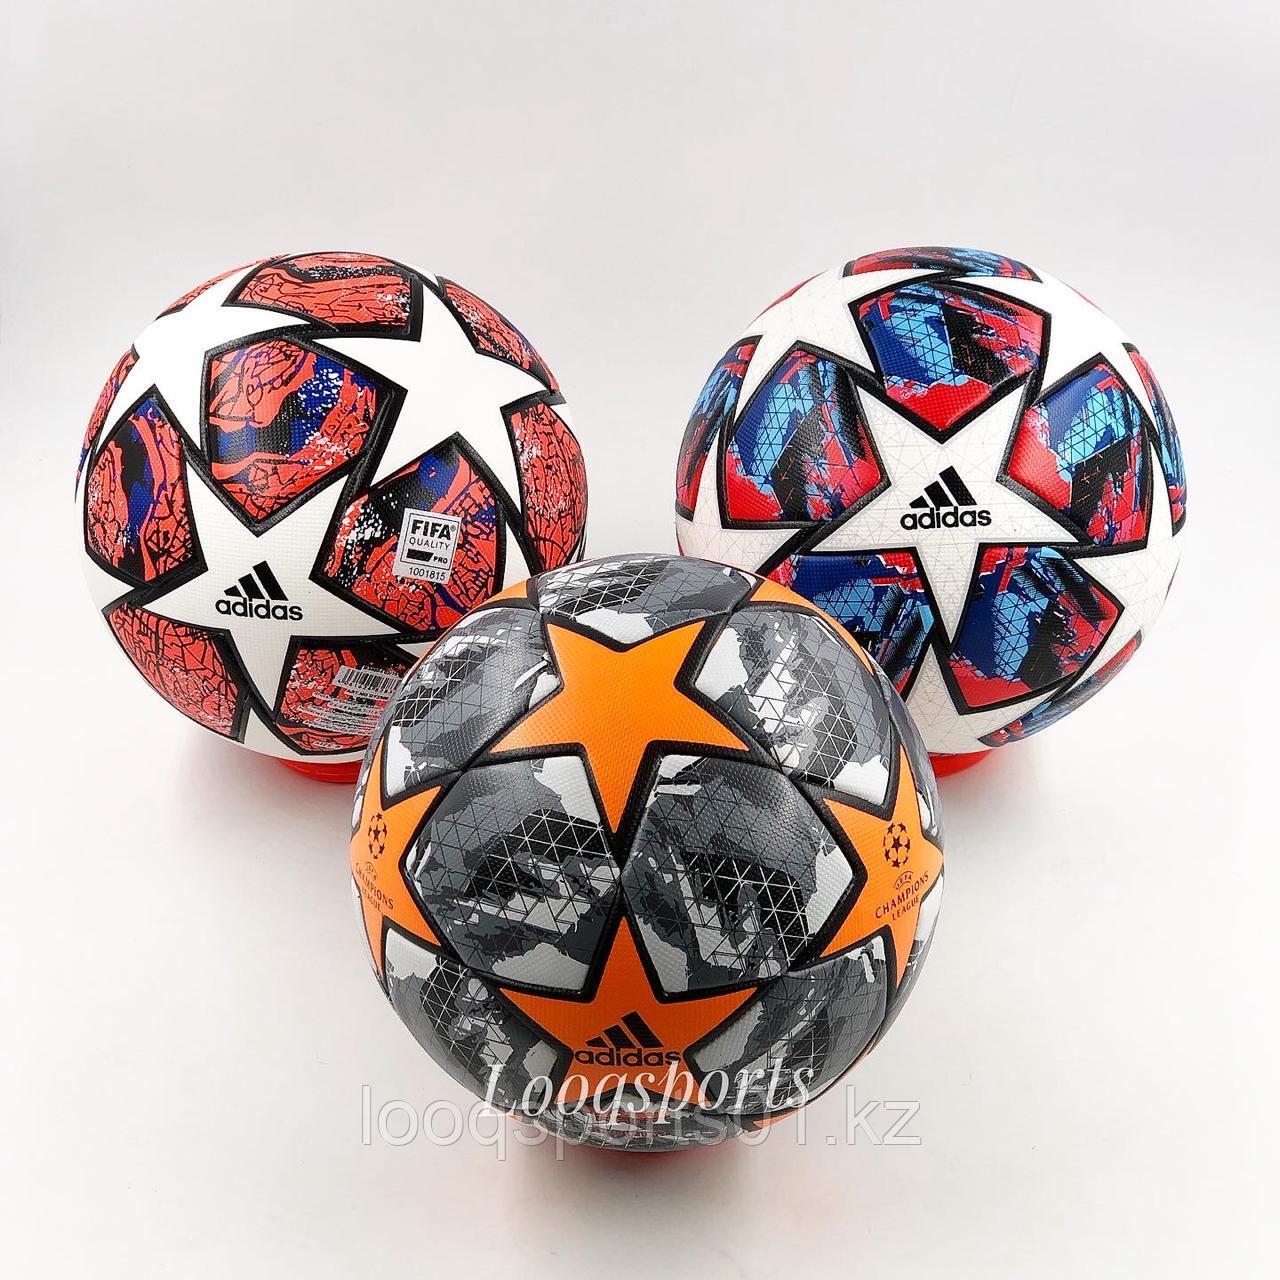 Футбольный мяч Adidas Champions League UEFA (5 размер)